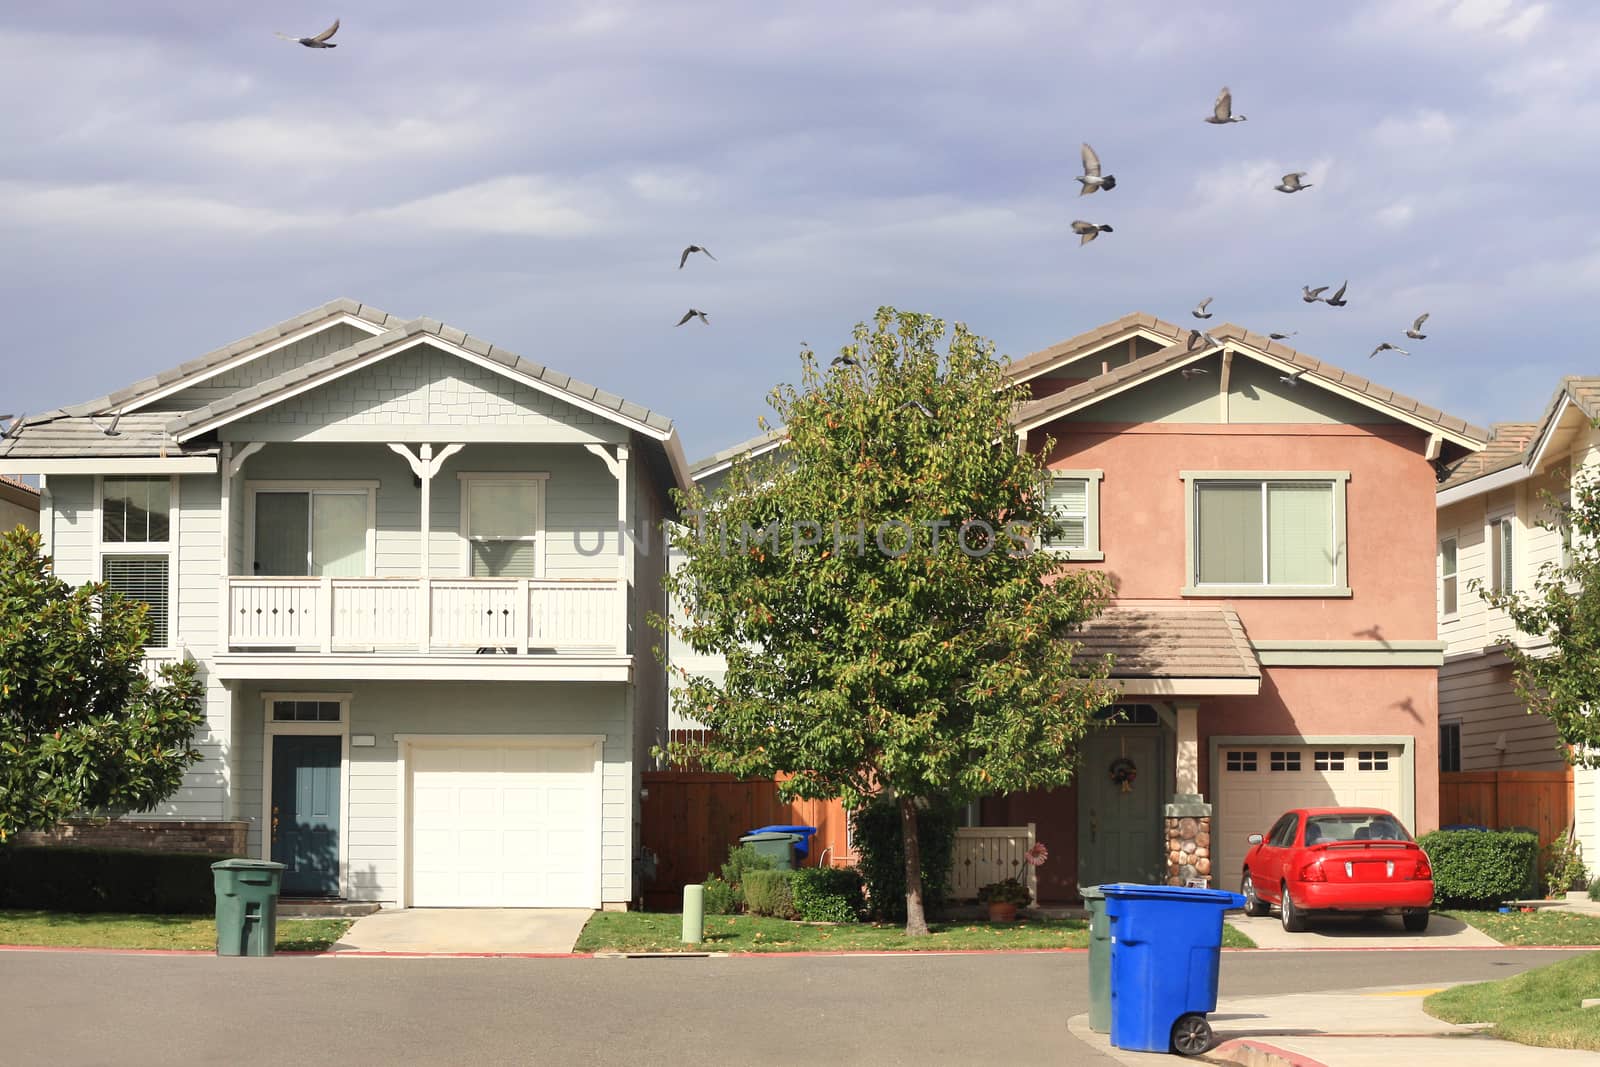 Standard houses in suburban neighborhood